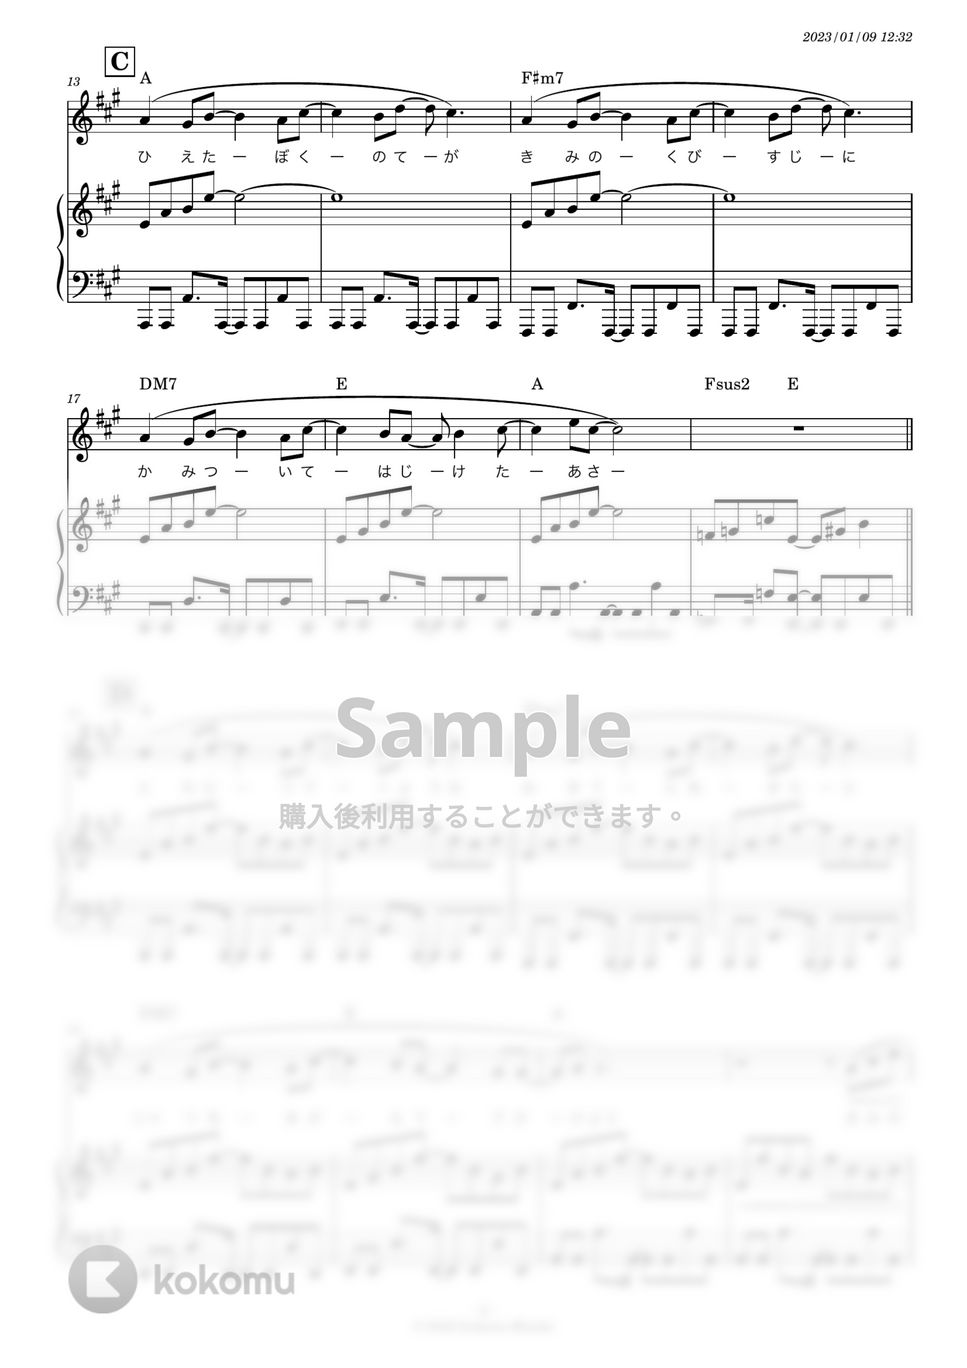 スピッツ - 青い車 (フルートなど＋ピアノ伴奏) by 糸川瑞樹